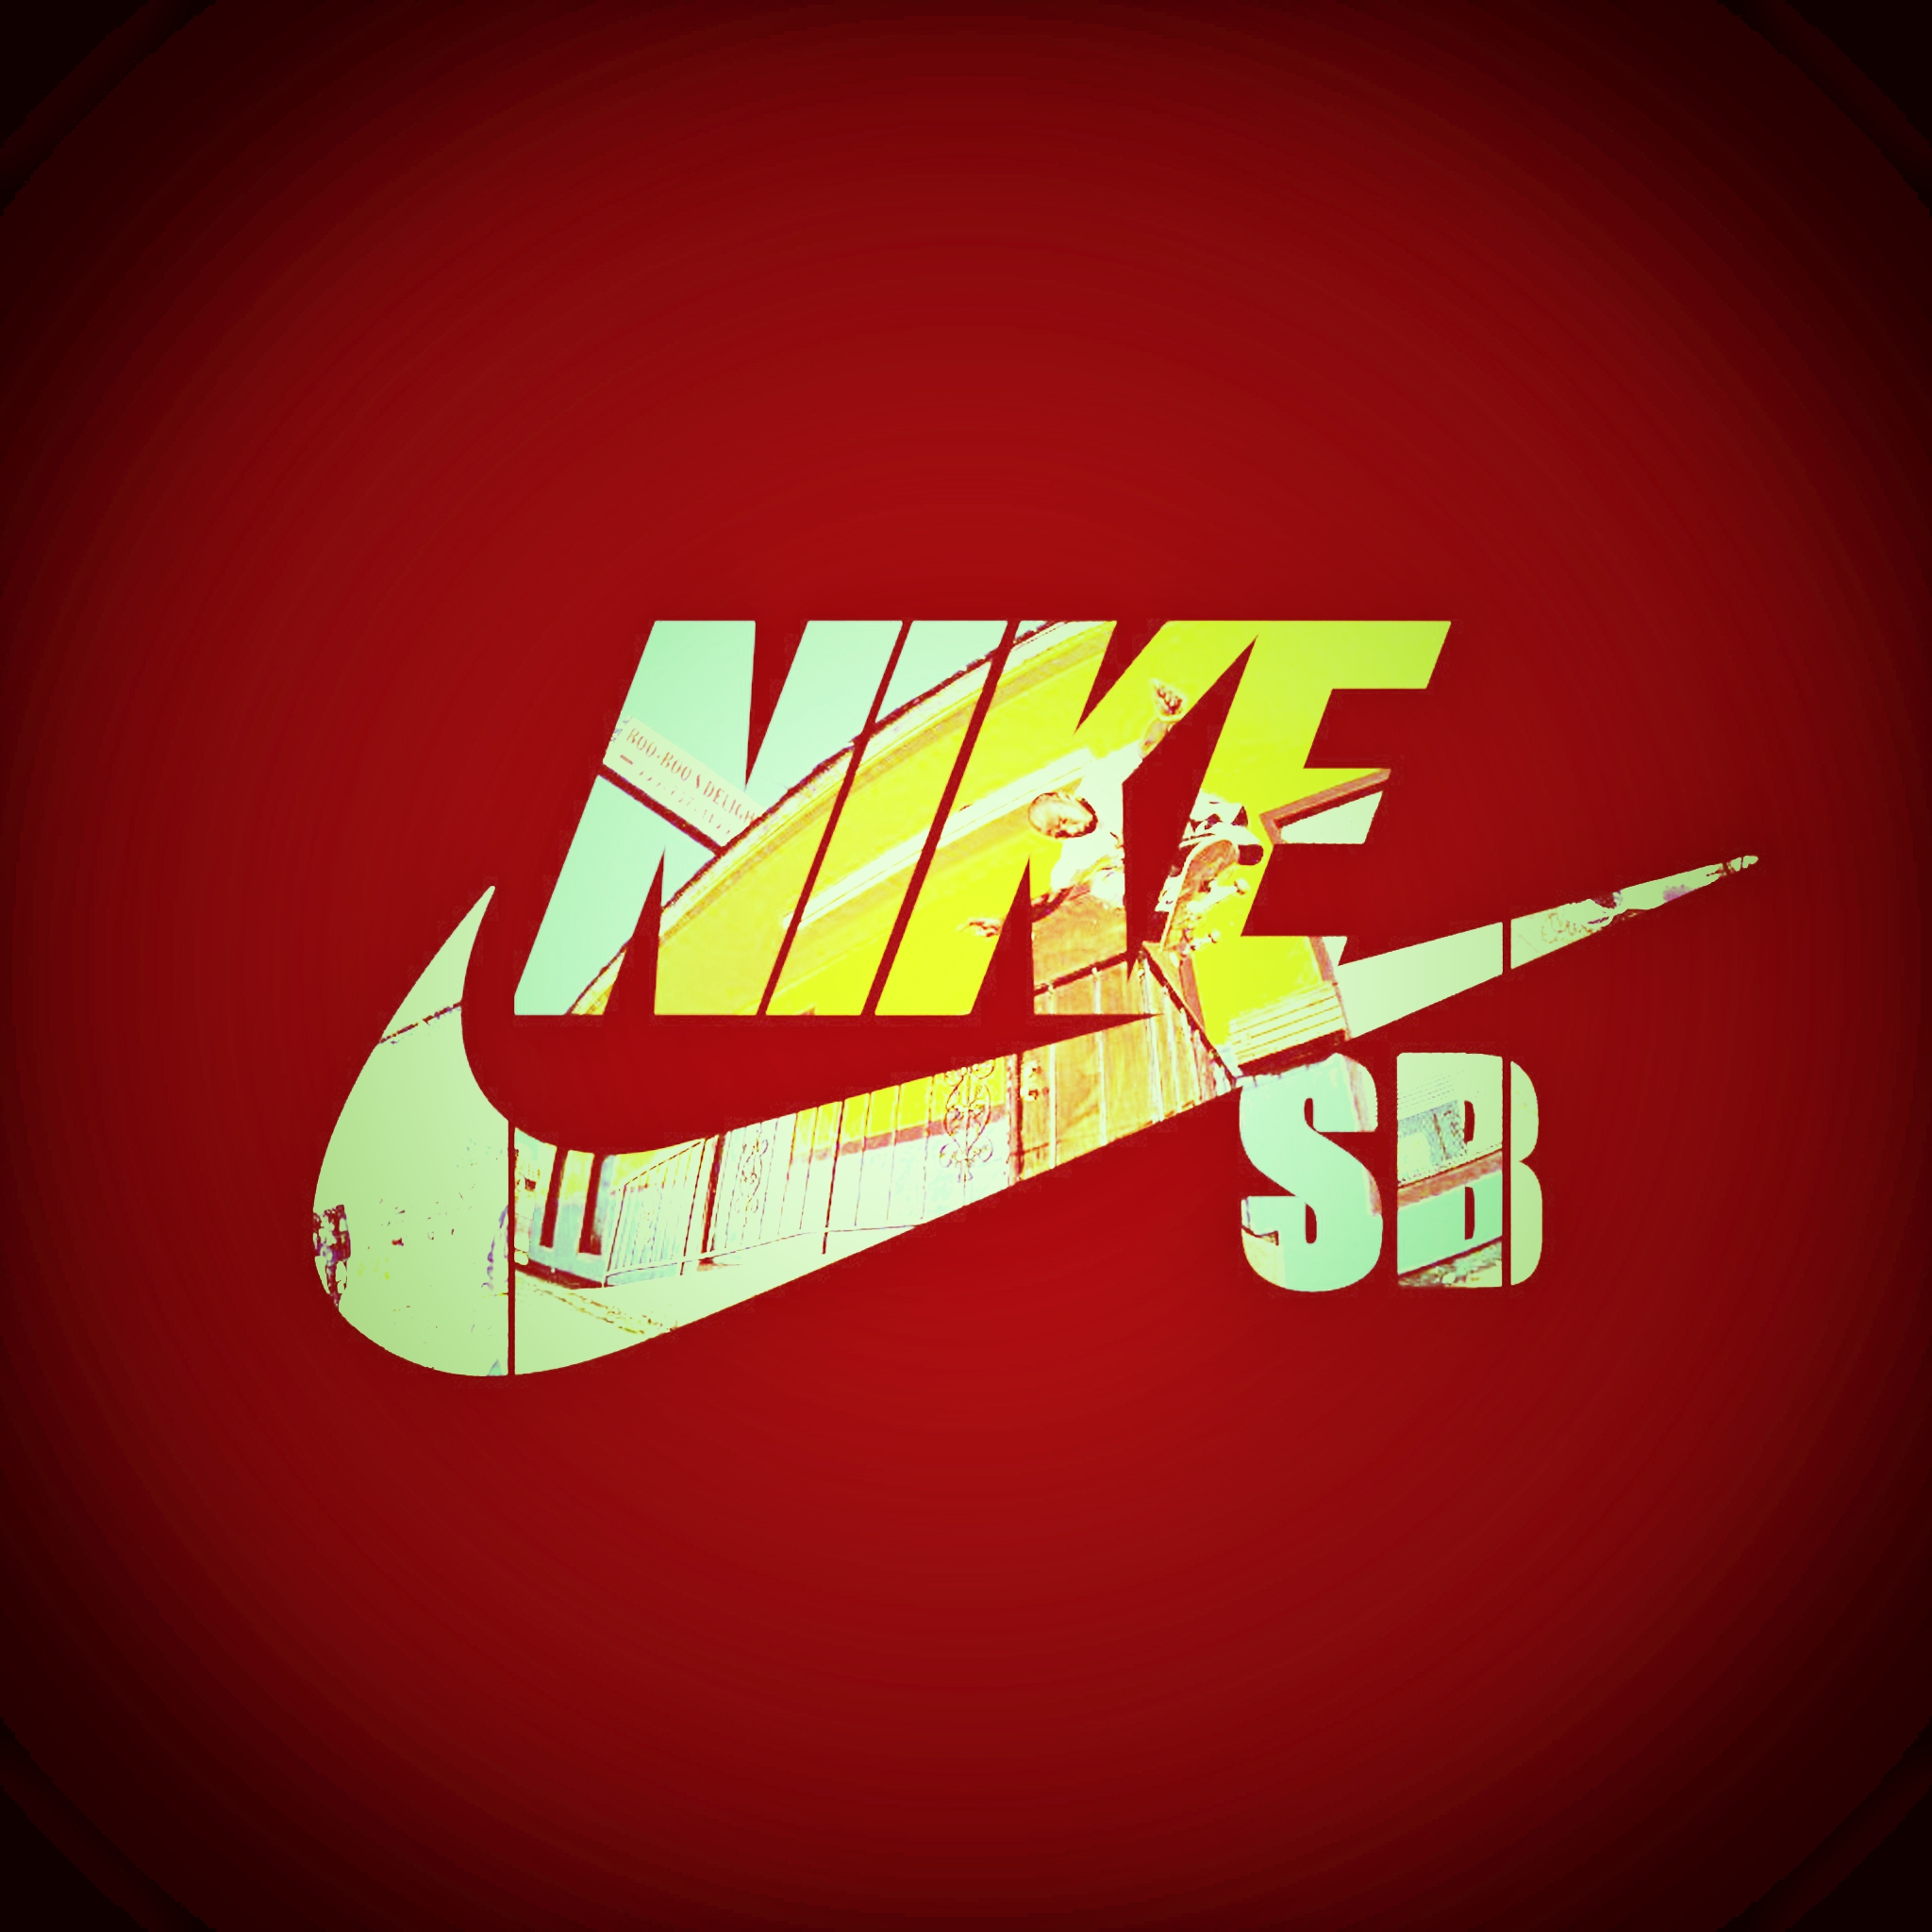 Nike Sb Hd 56 Remise Adana Ahef Org Tr